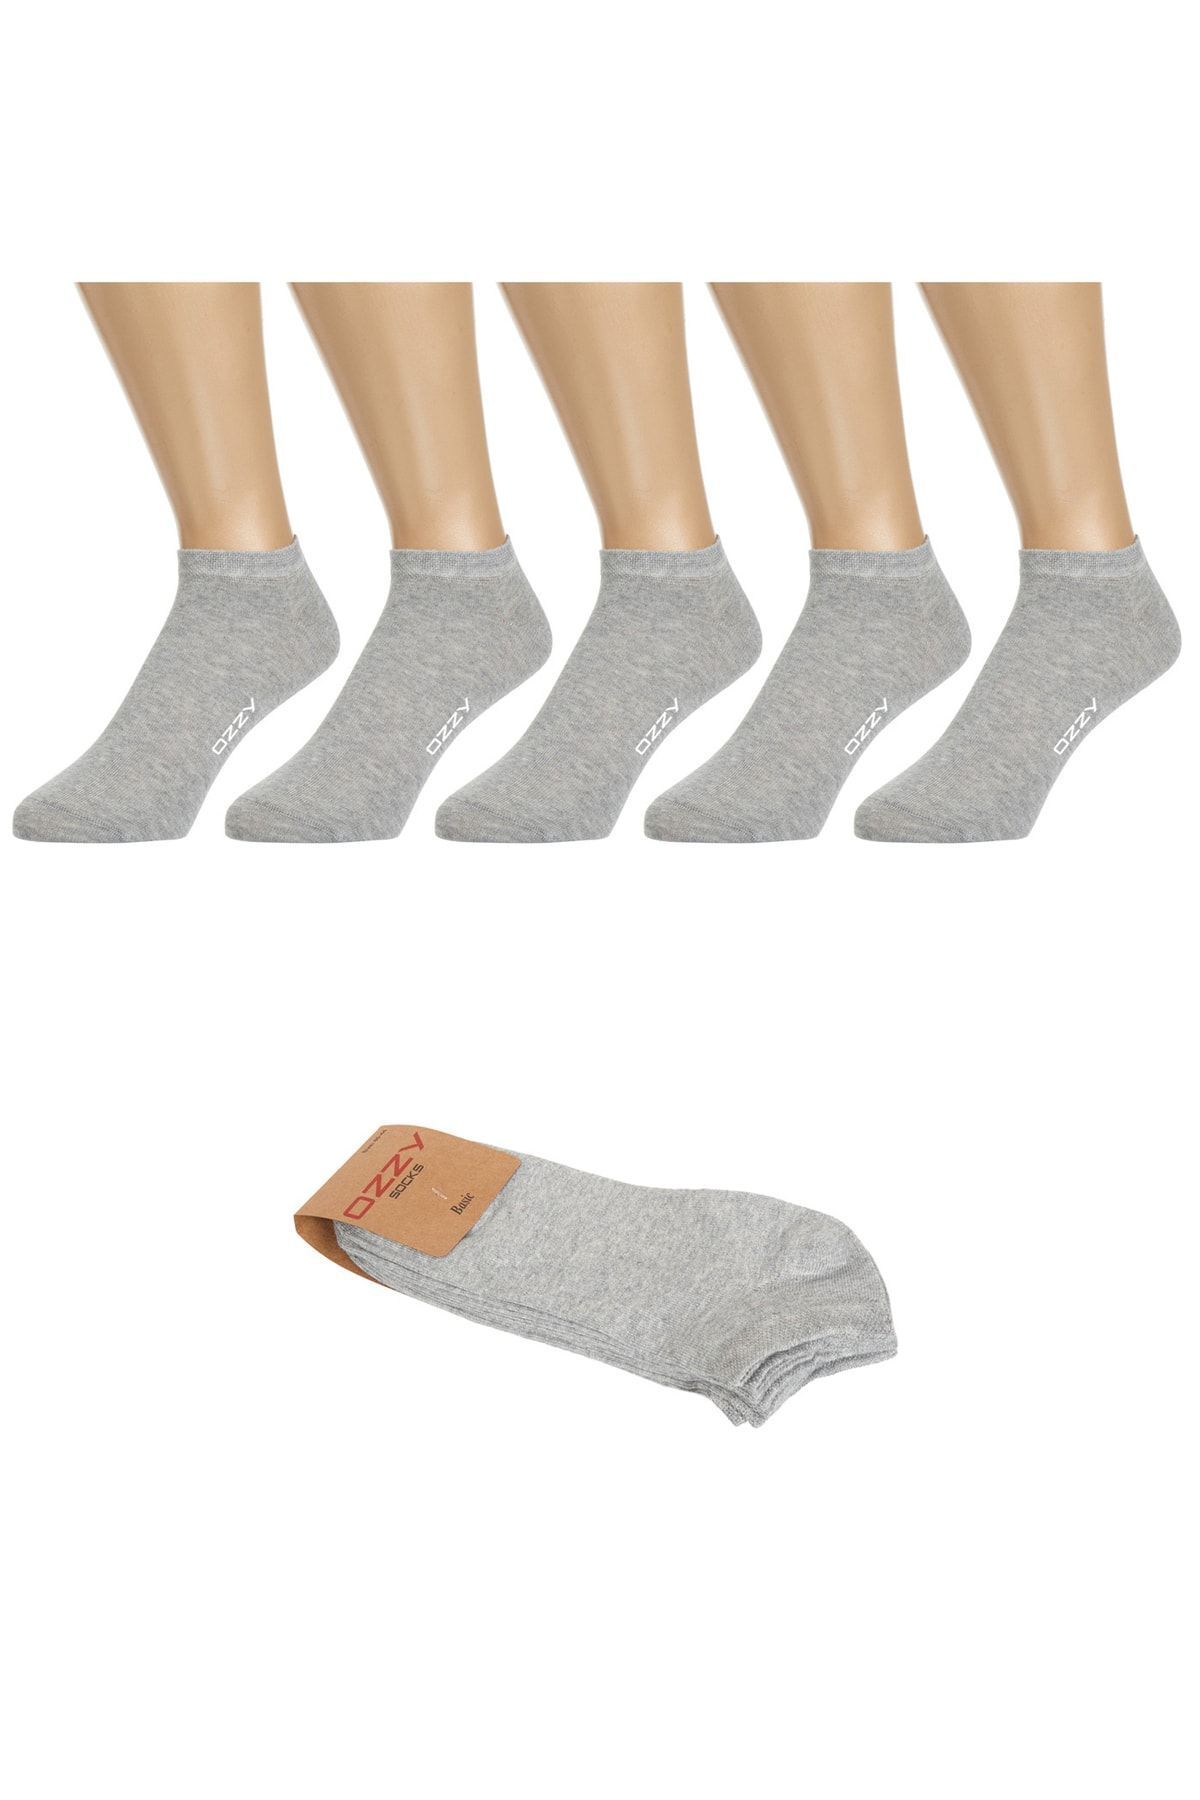 Ozzy Socks 5 Çift Dikişsiz Pamuklu Gri Patik Çorap Yazlık Dayanıklı Topuk Ve Burun